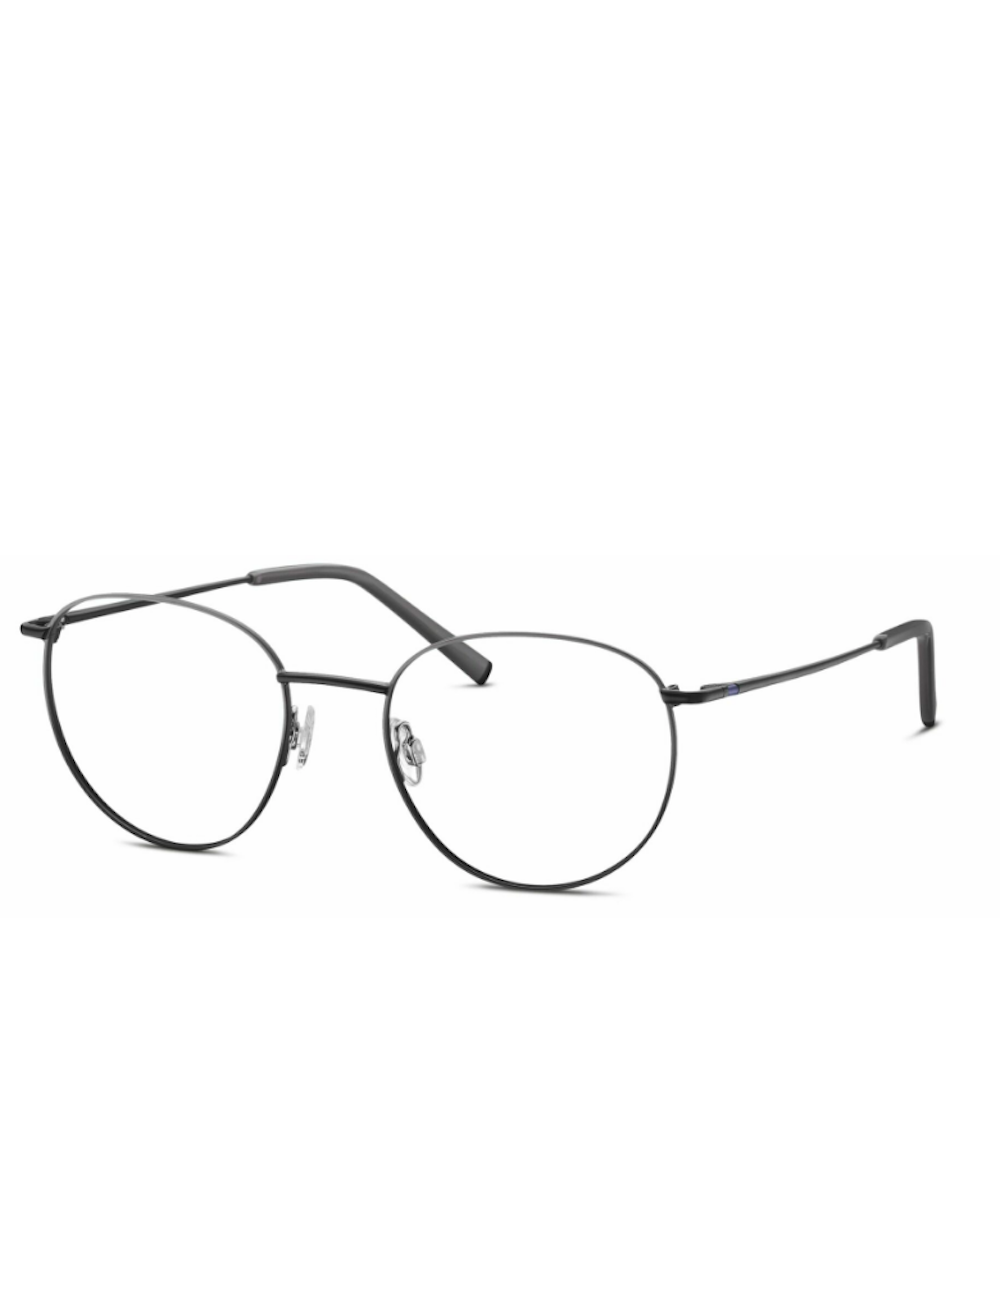 Humphrey's eyewear 582327 13 pantos metal eyeglasses